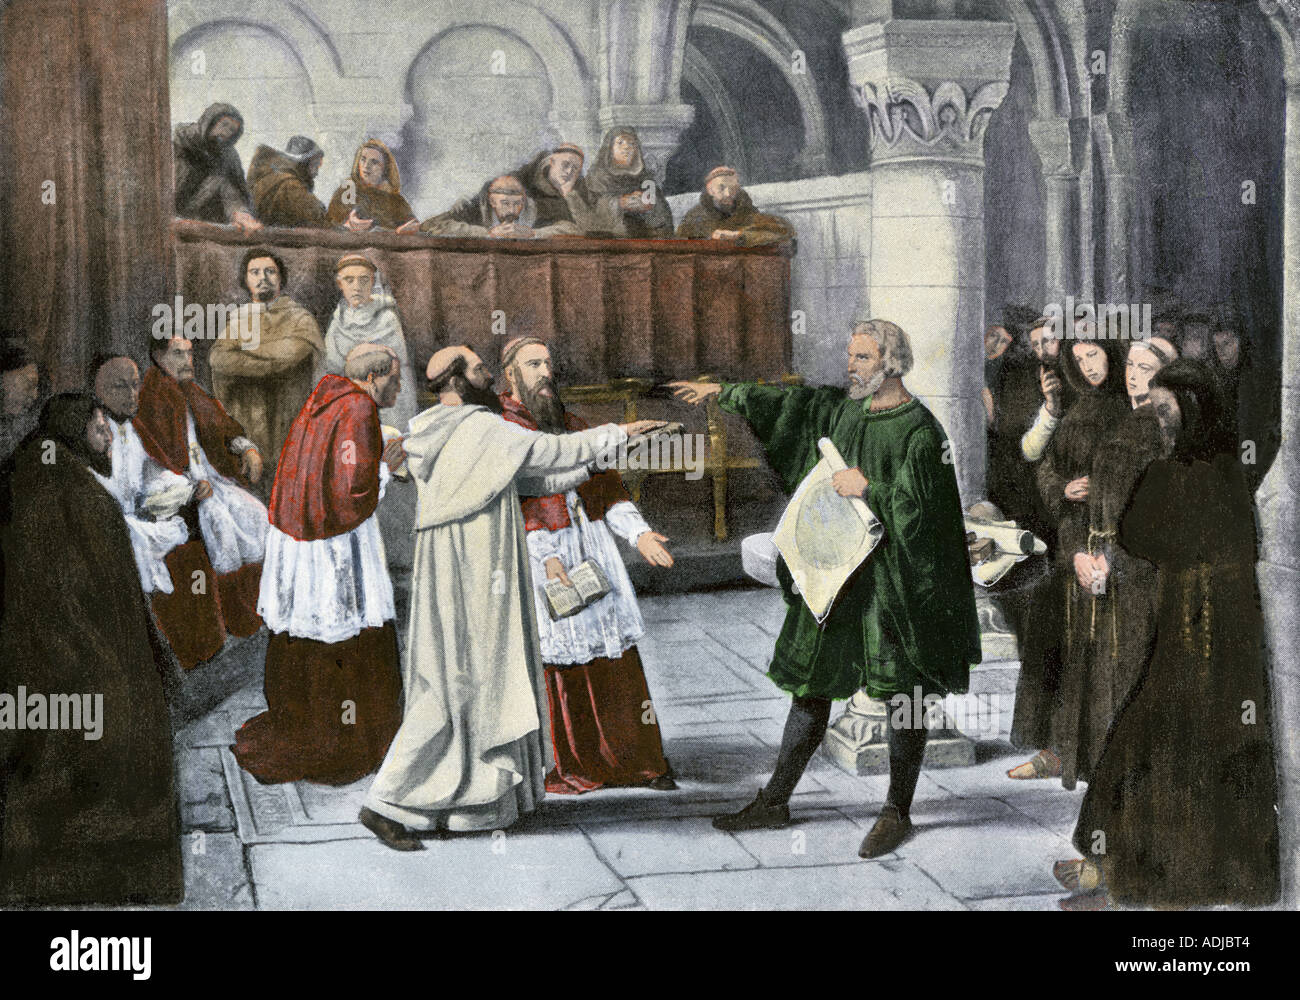 Galileo Galilei verteidigt seine astronomischen Beobachtungen vor der Inquisition 1633. Handcolorierte halftone einer Abbildung Stockfoto